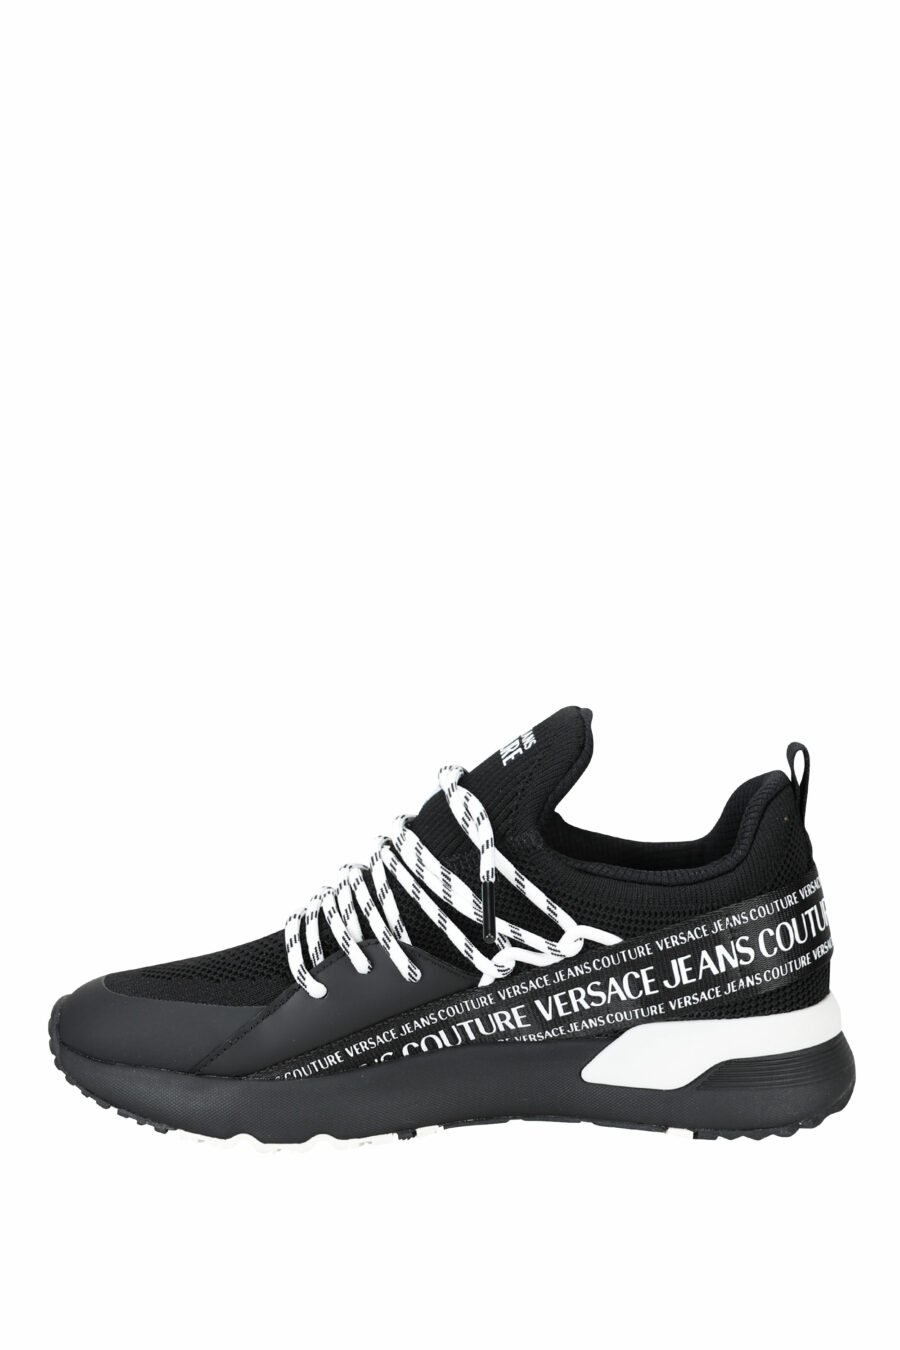 Zapatillas negras "troadlop" con logo en cinta blanco - 8052019454468 3